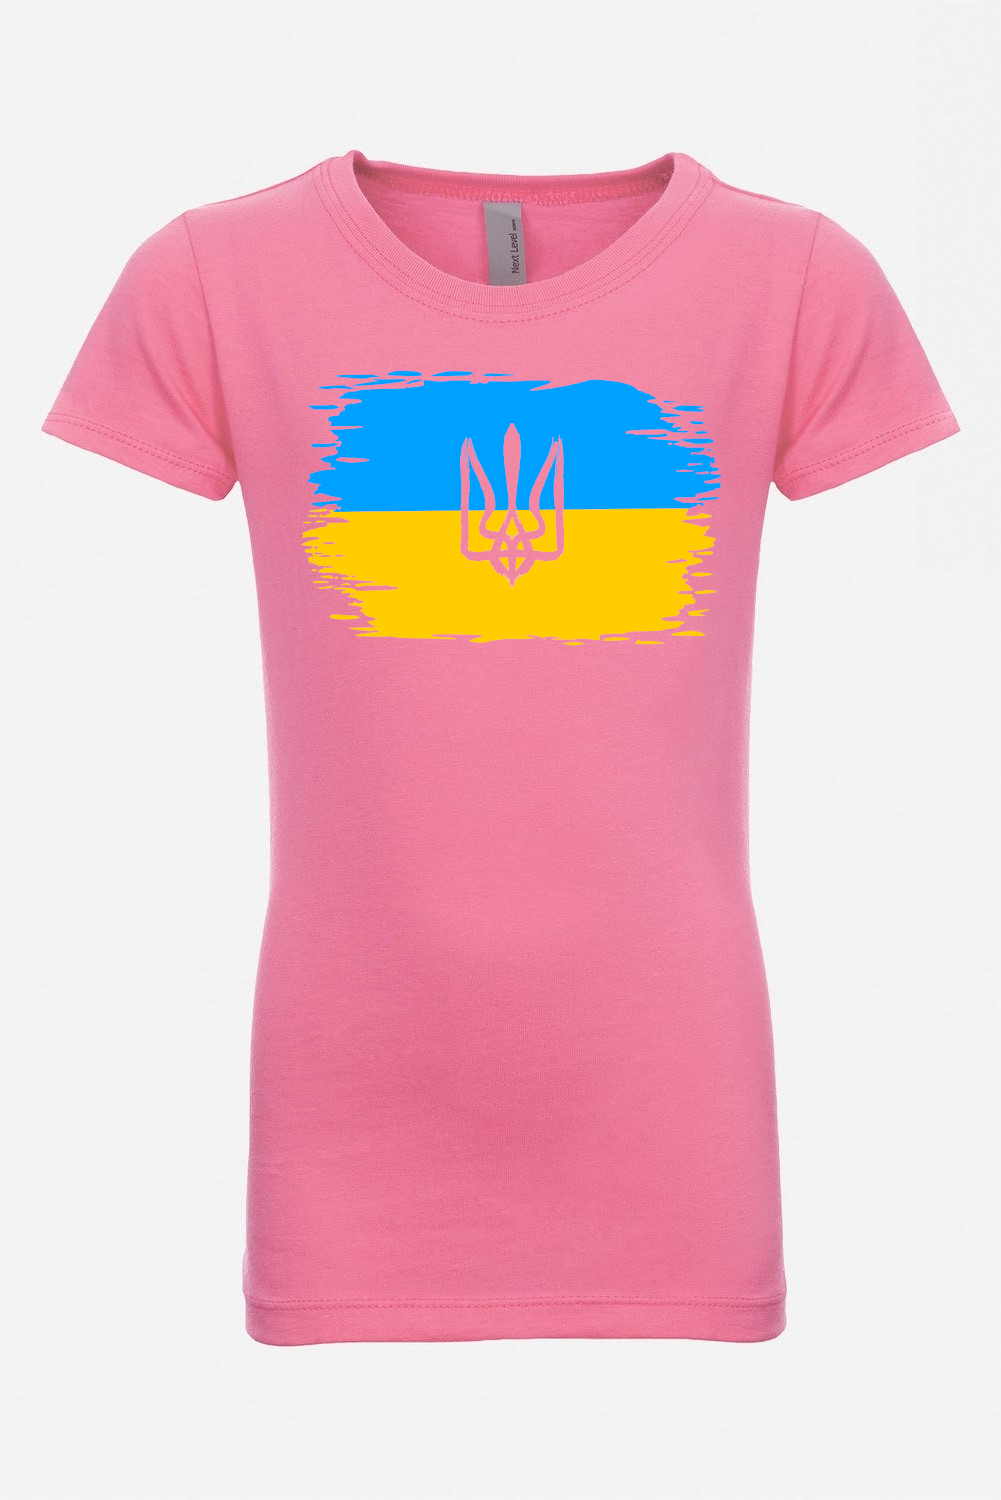 Girl's t-shirt "Ukrainian flag"